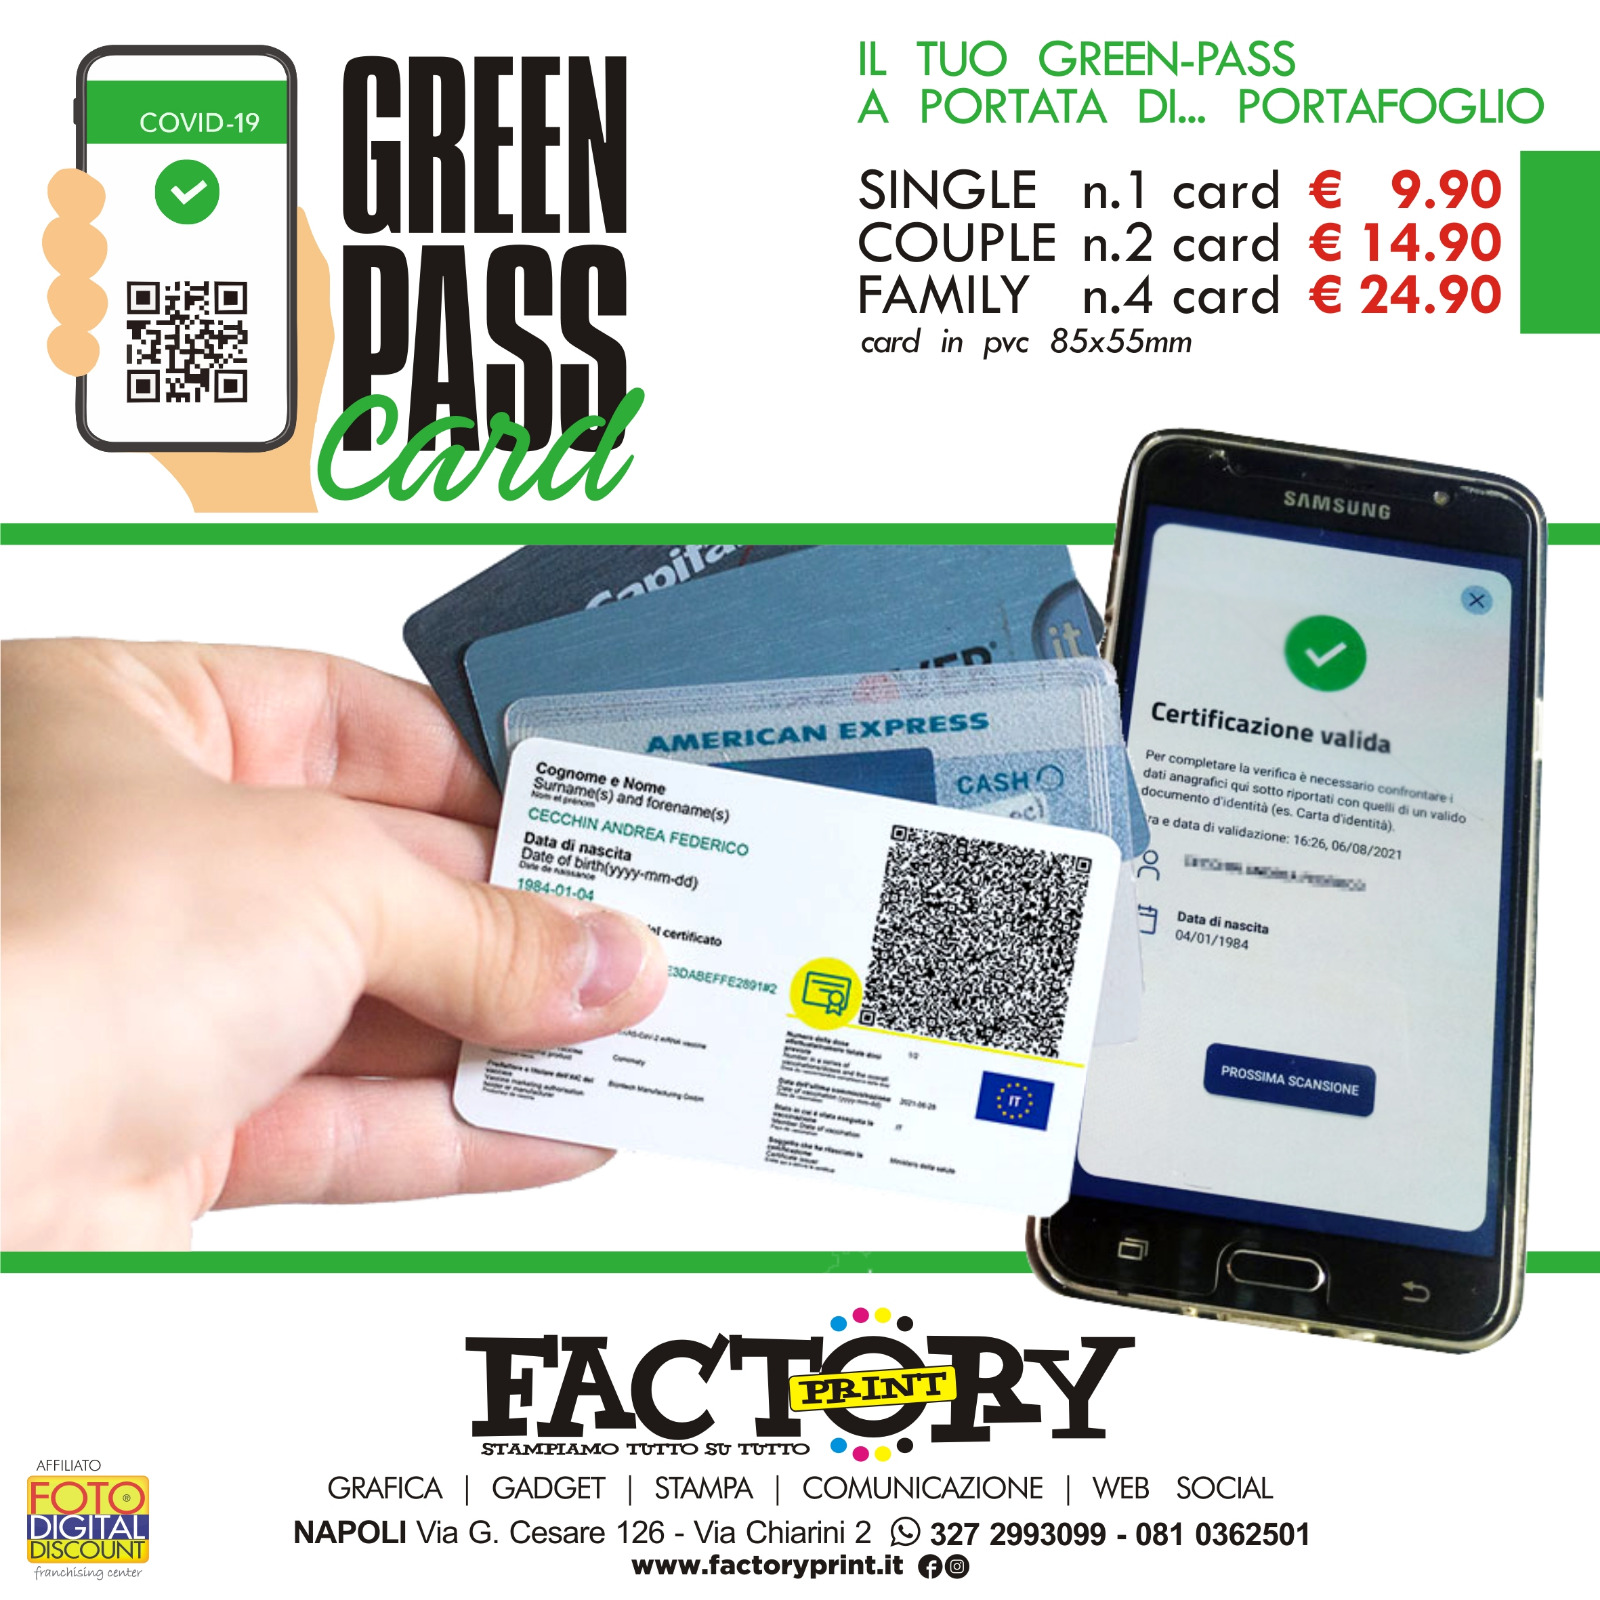 Green pass Card